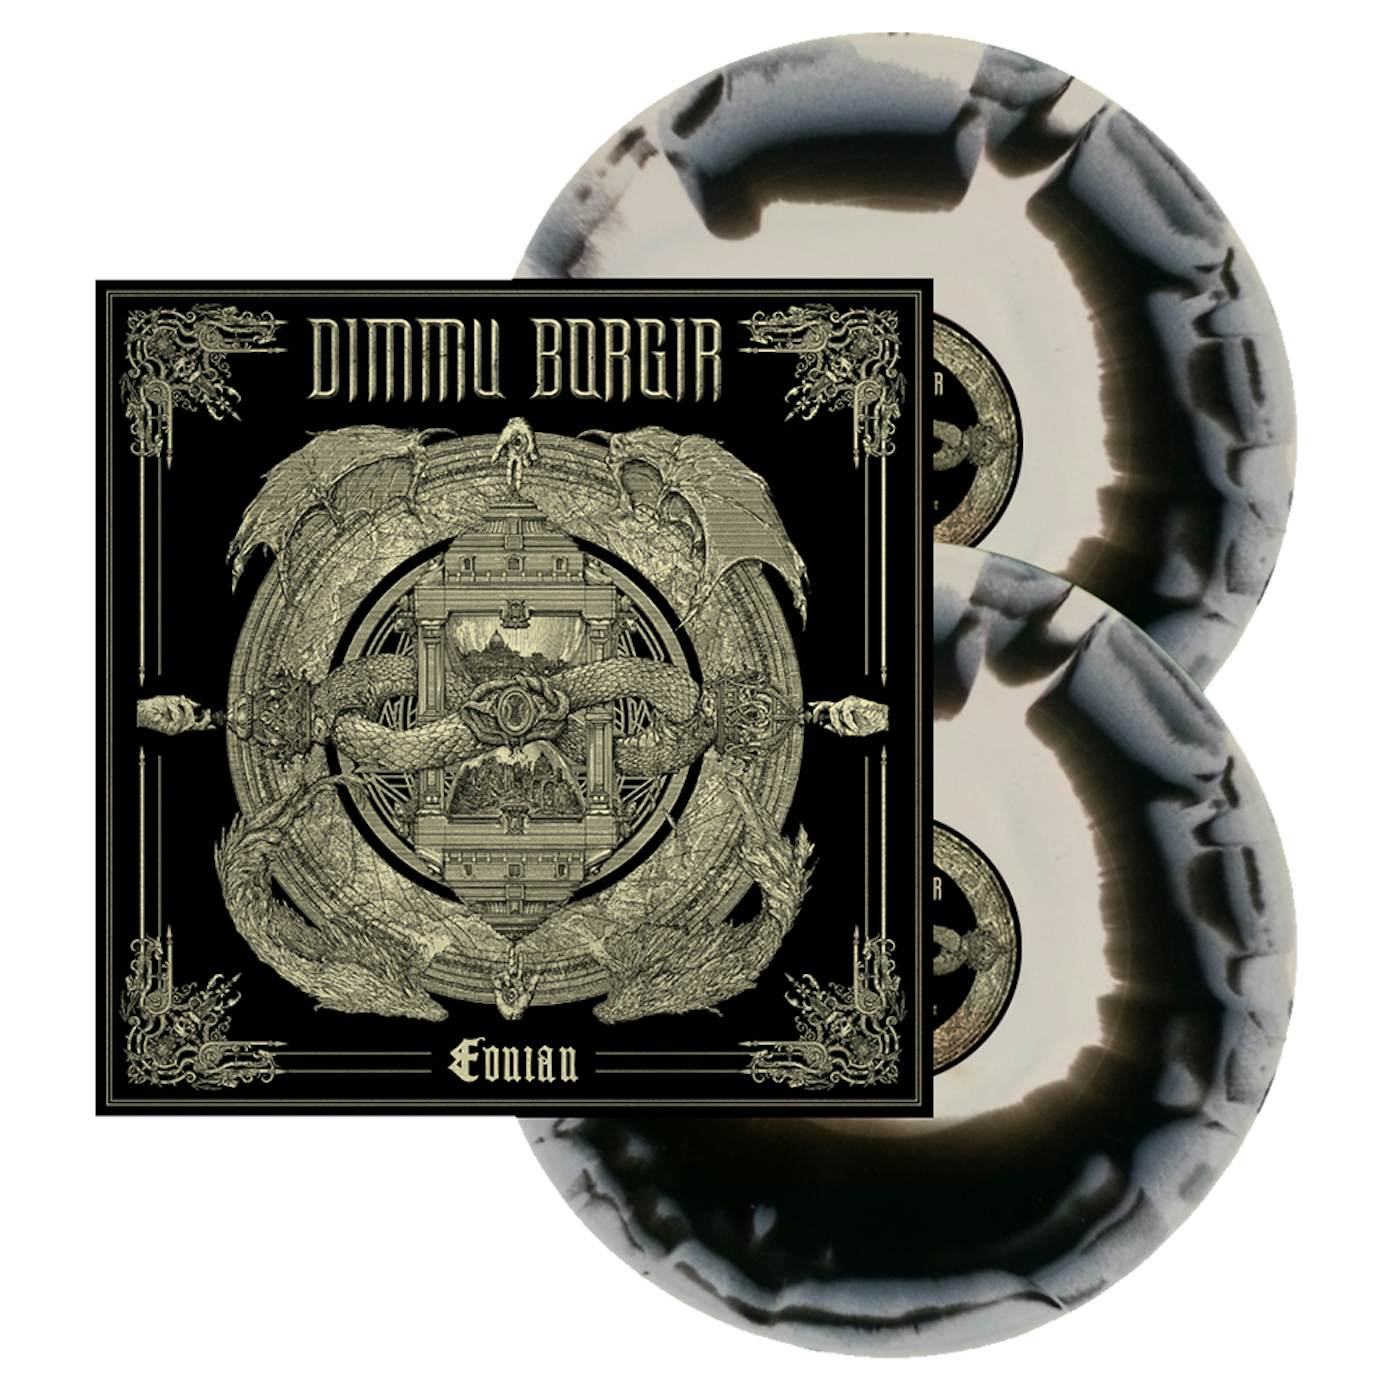 Dimmu Borgir Eonian Bone & Black Swirl Vinyl LP